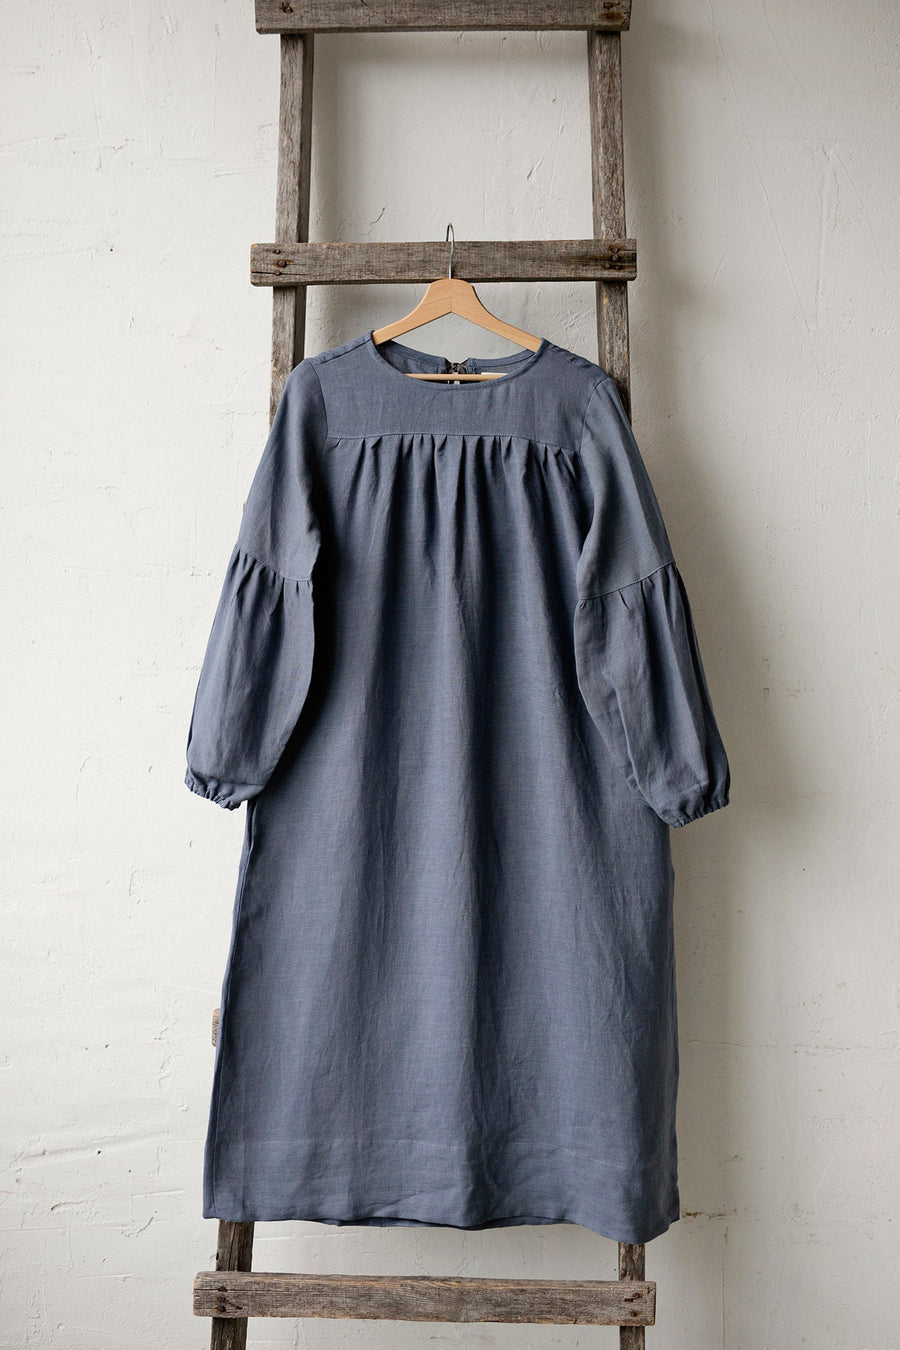 Dusty Blue Victorian Dress